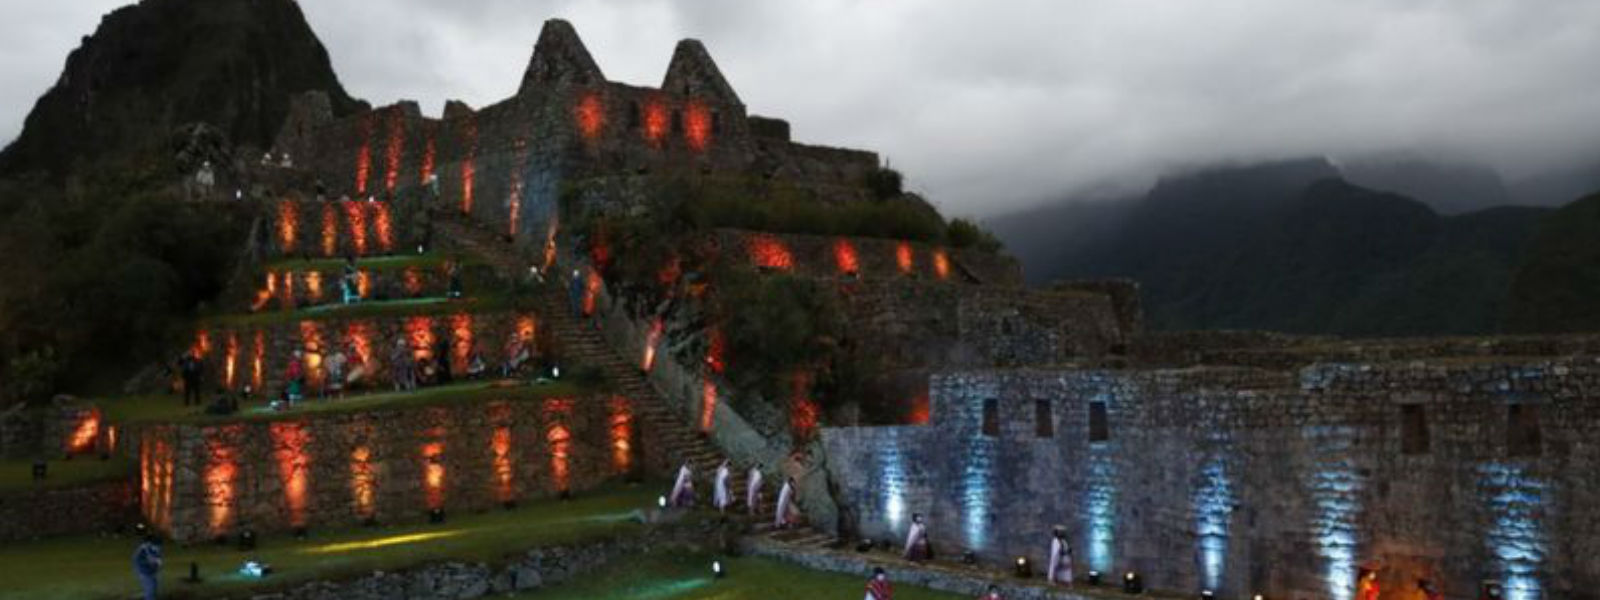 கொரோனா ; புராதன நகரான Machu Picchu மீள திறப்பு